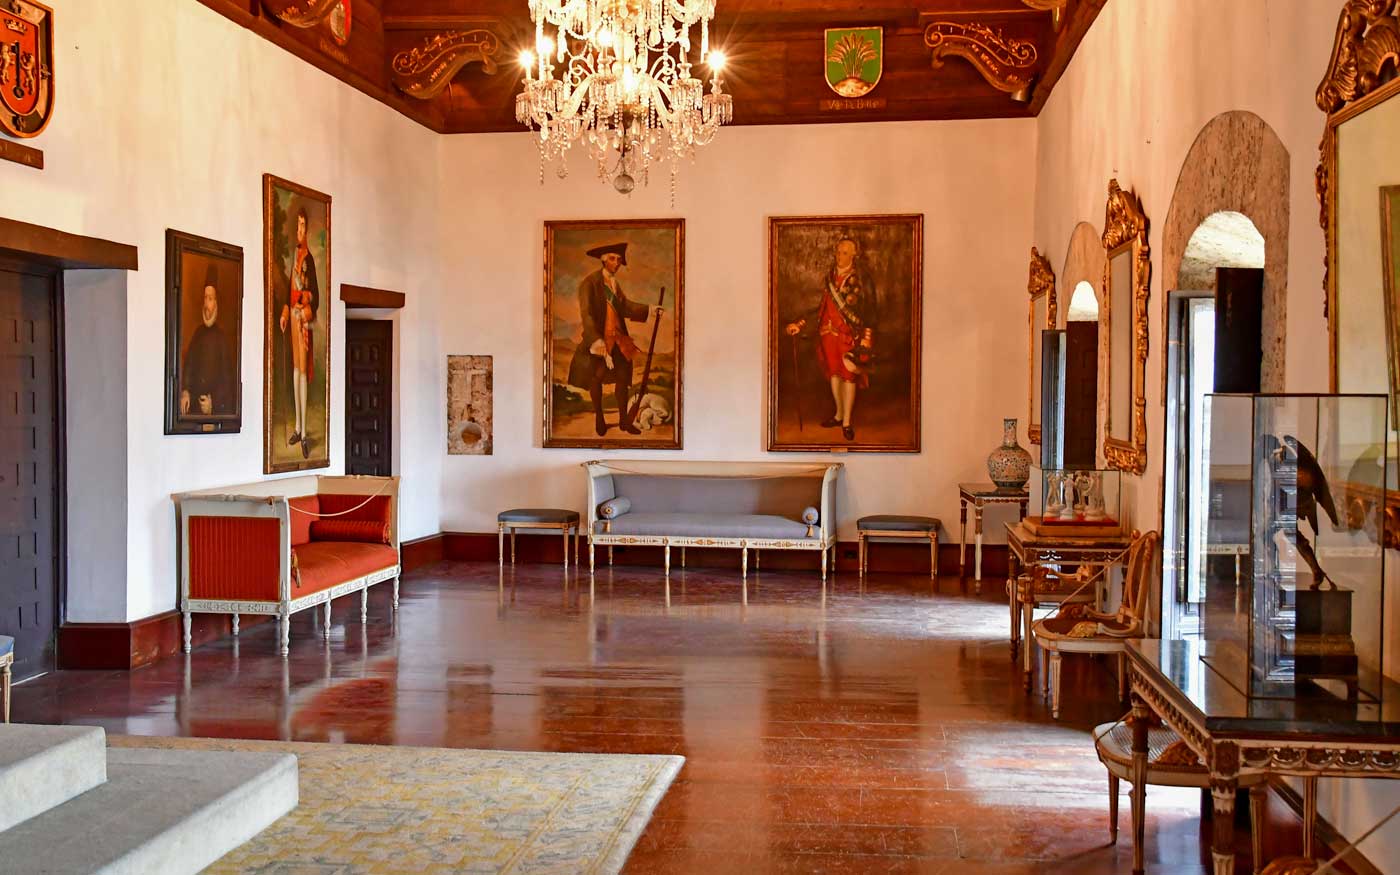 Inside lobby of Museo de las Casas Reales.